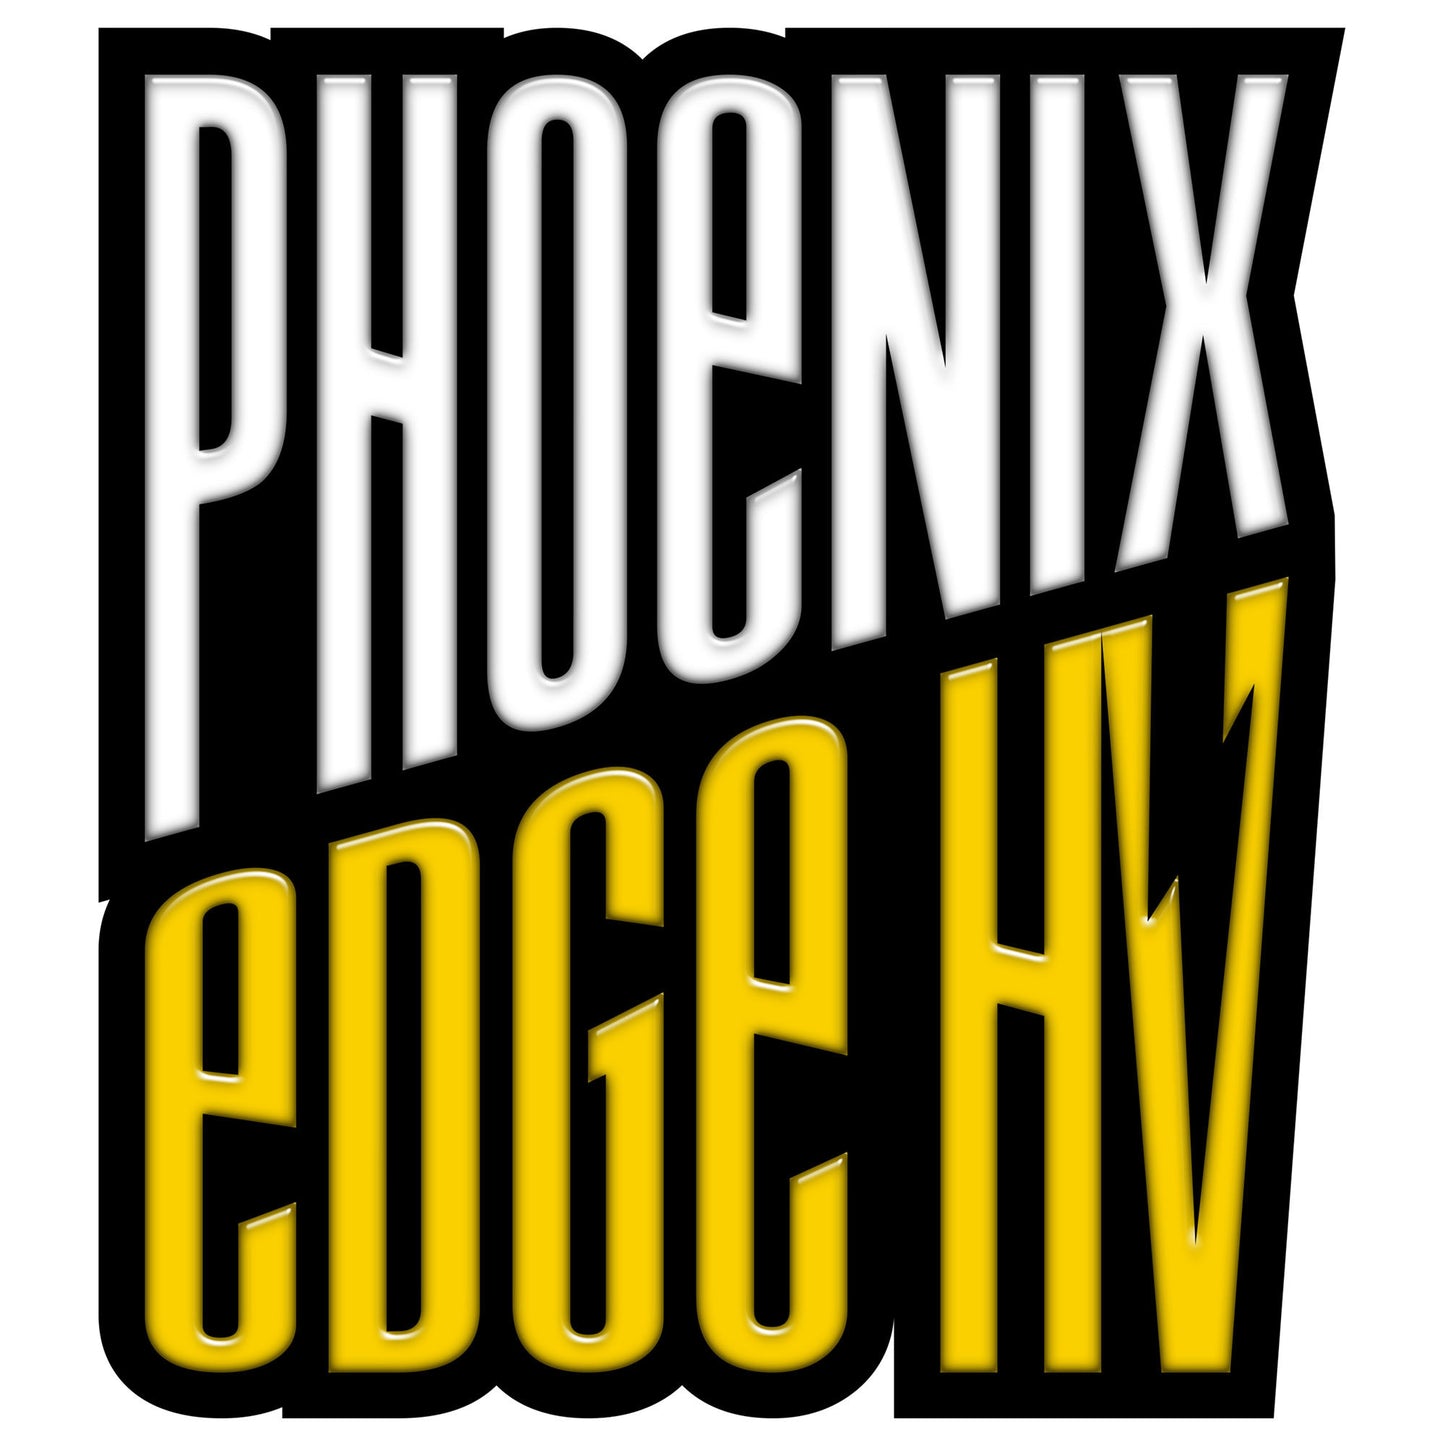 Phoenix Edge 80HV, 50V 80-Amp ESC